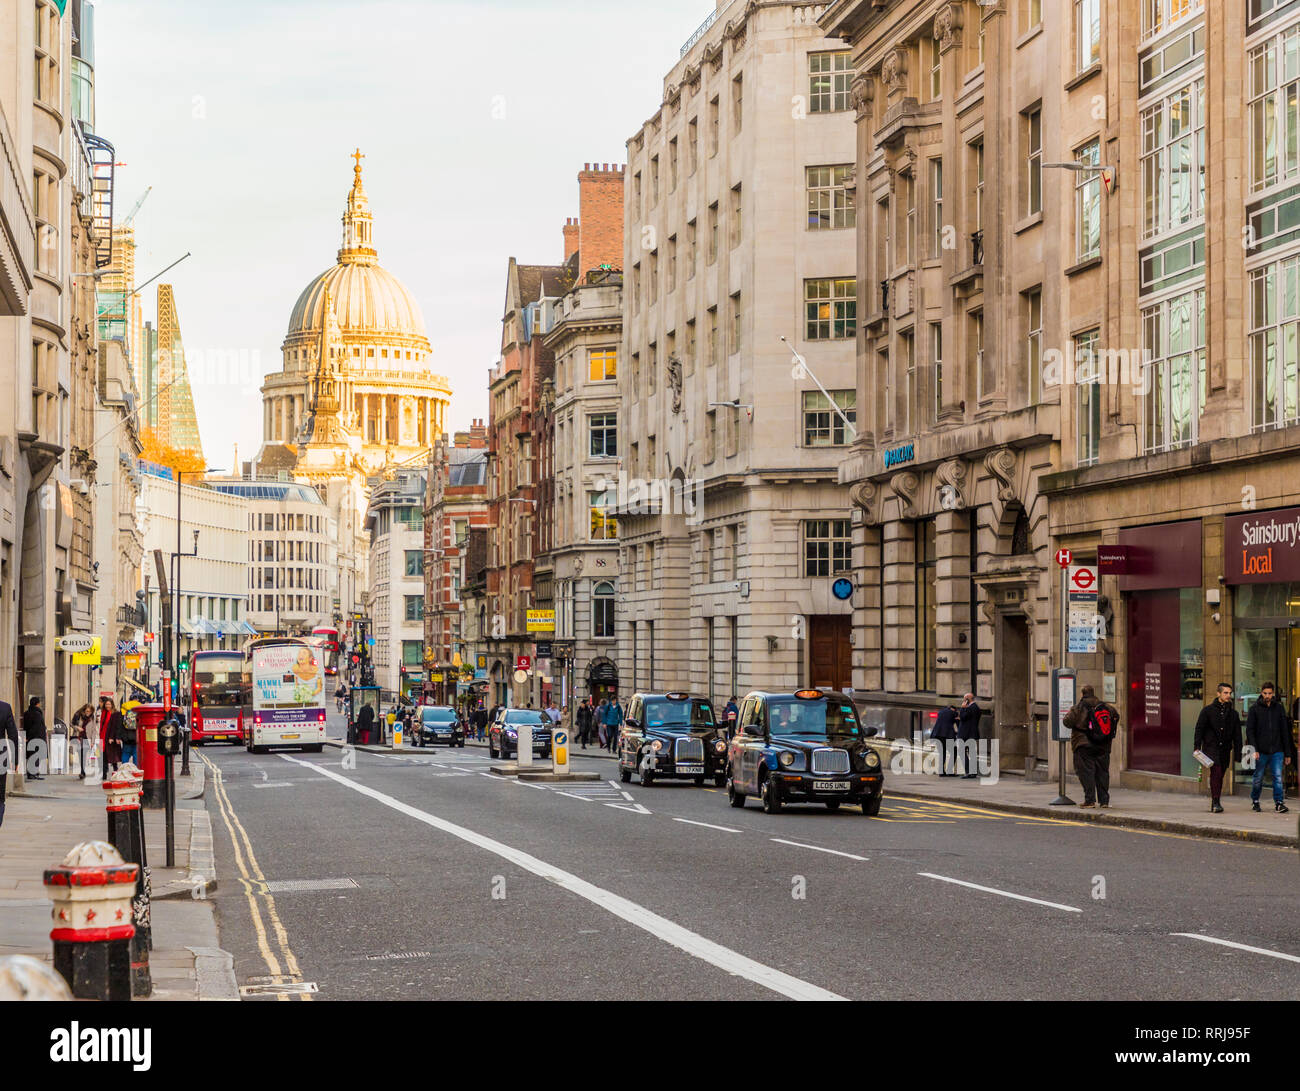 Une vue de Fleet Street, avec saint Pauls cathédrale en arrière-plan, Londres, Angleterre, Royaume-Uni, Europe Banque D'Images